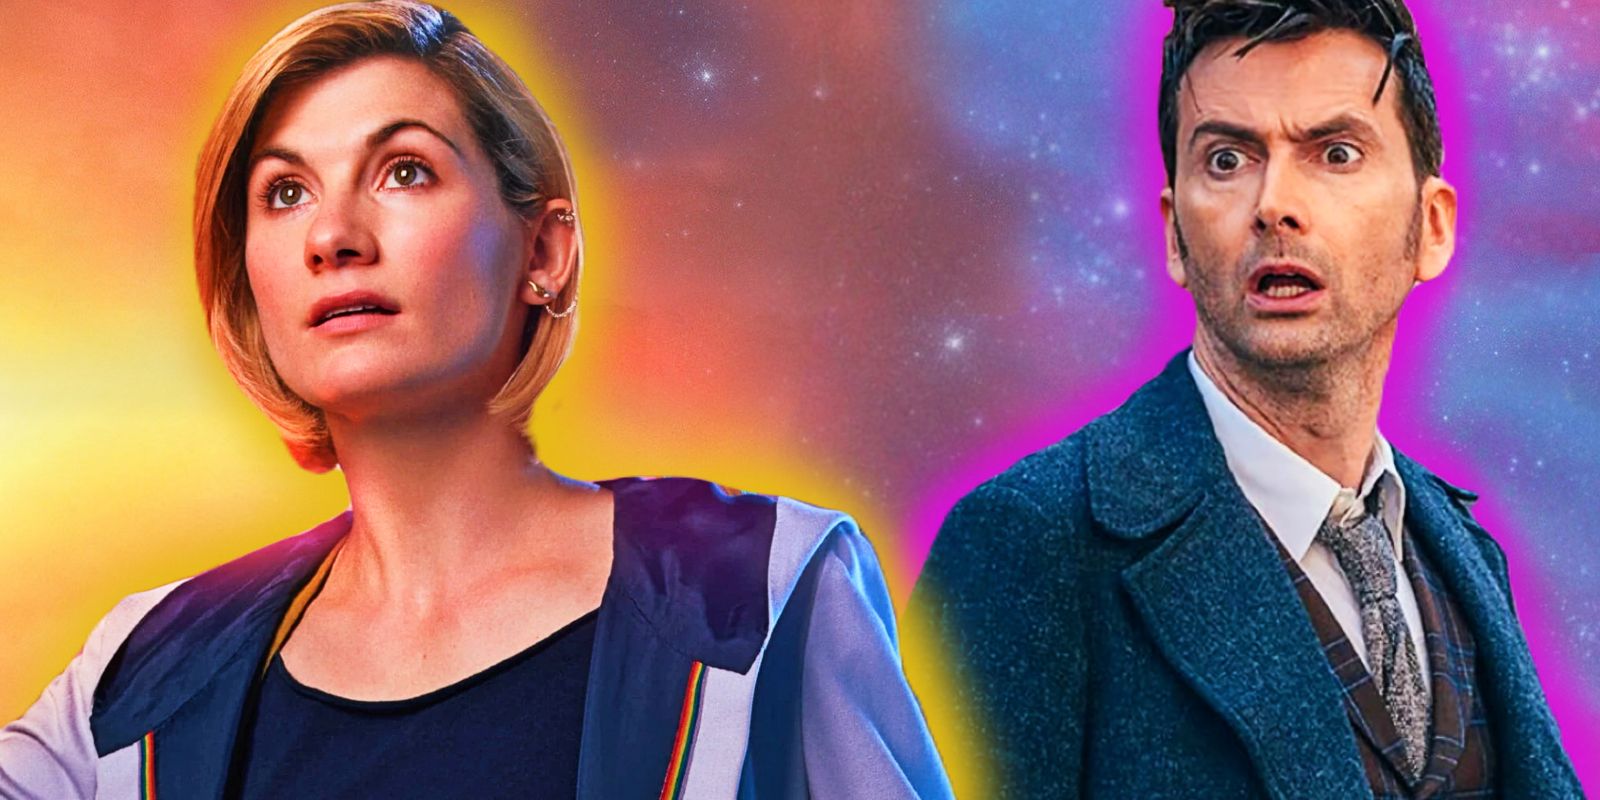 Doctor Who revela los verdaderos pronombres y el género del doctor después de la regeneración de Jodie Whittaker